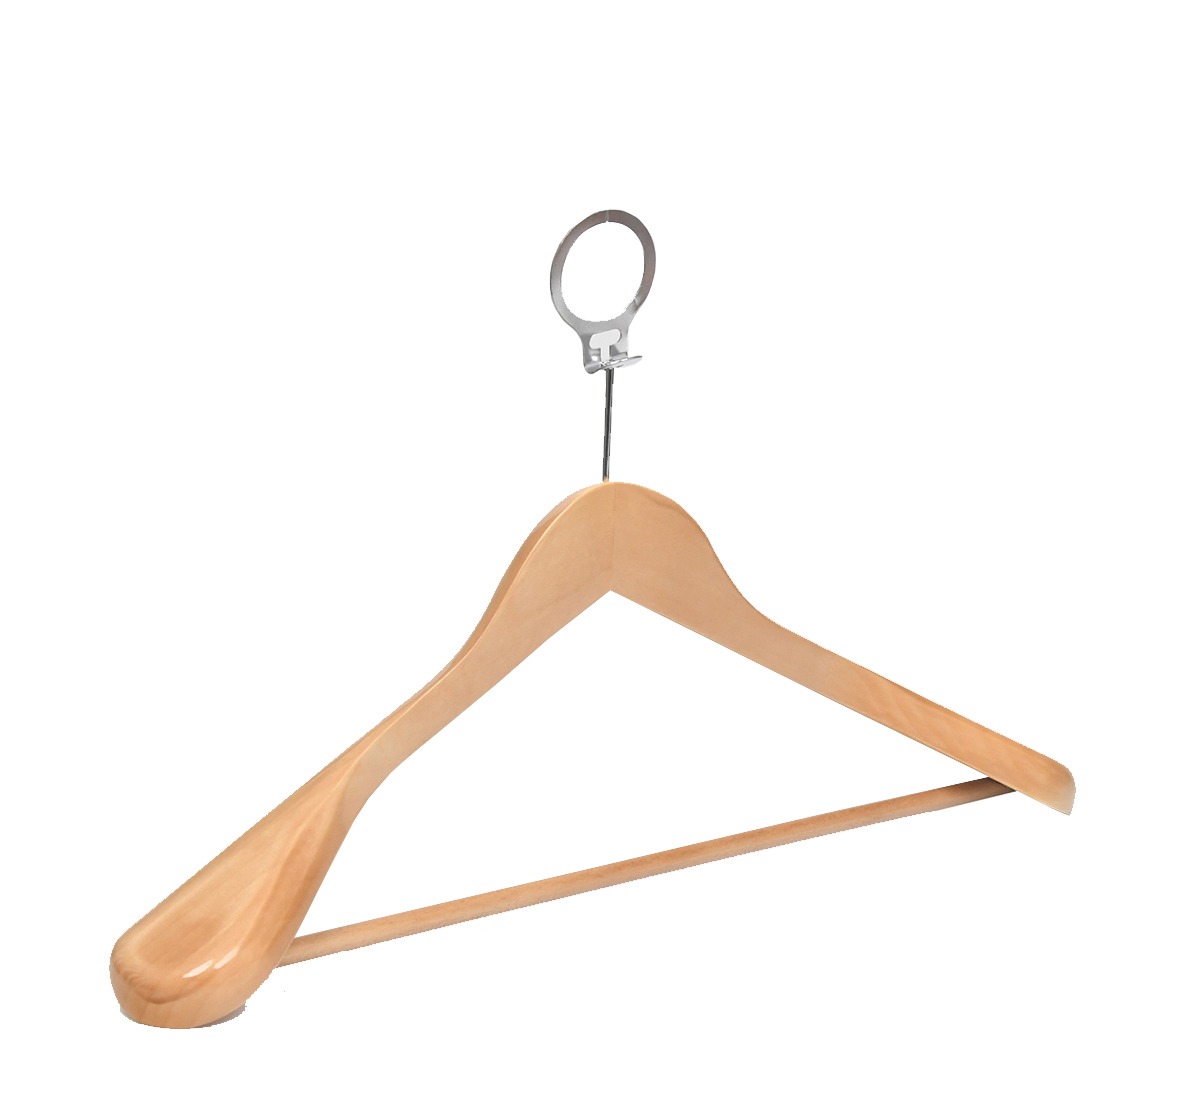 Anti-theft Premium Coat Hanger
